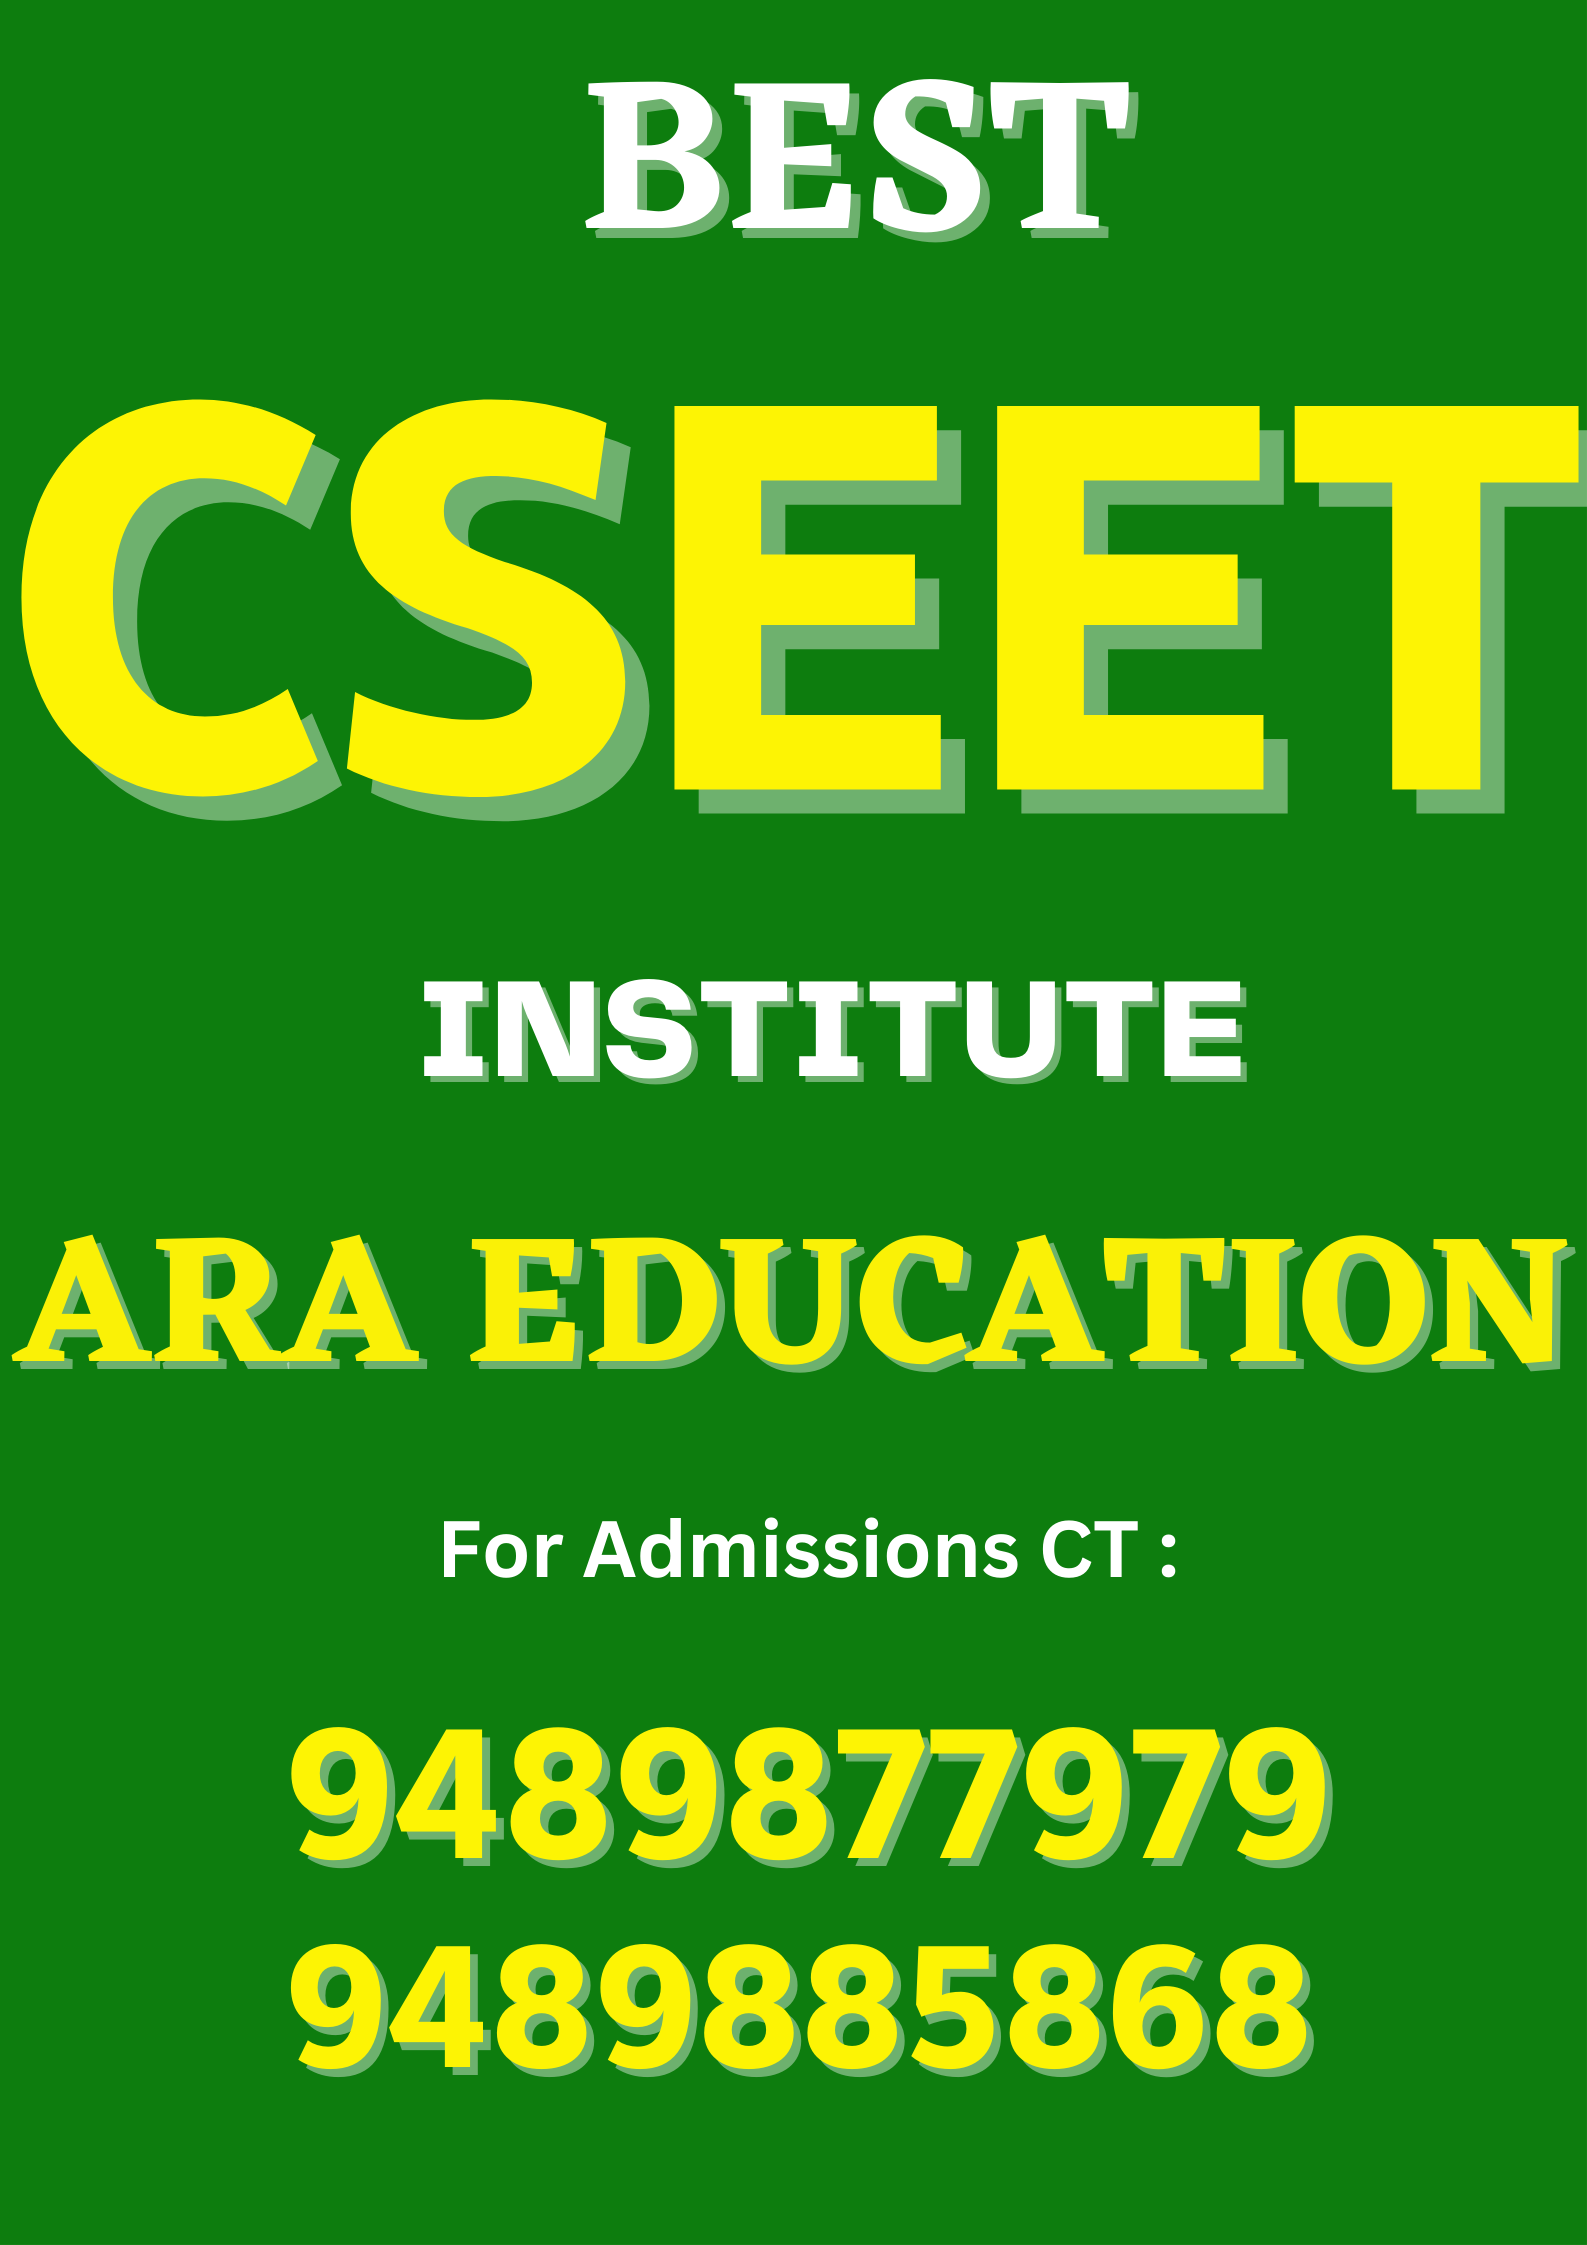 Best CSEET Institute